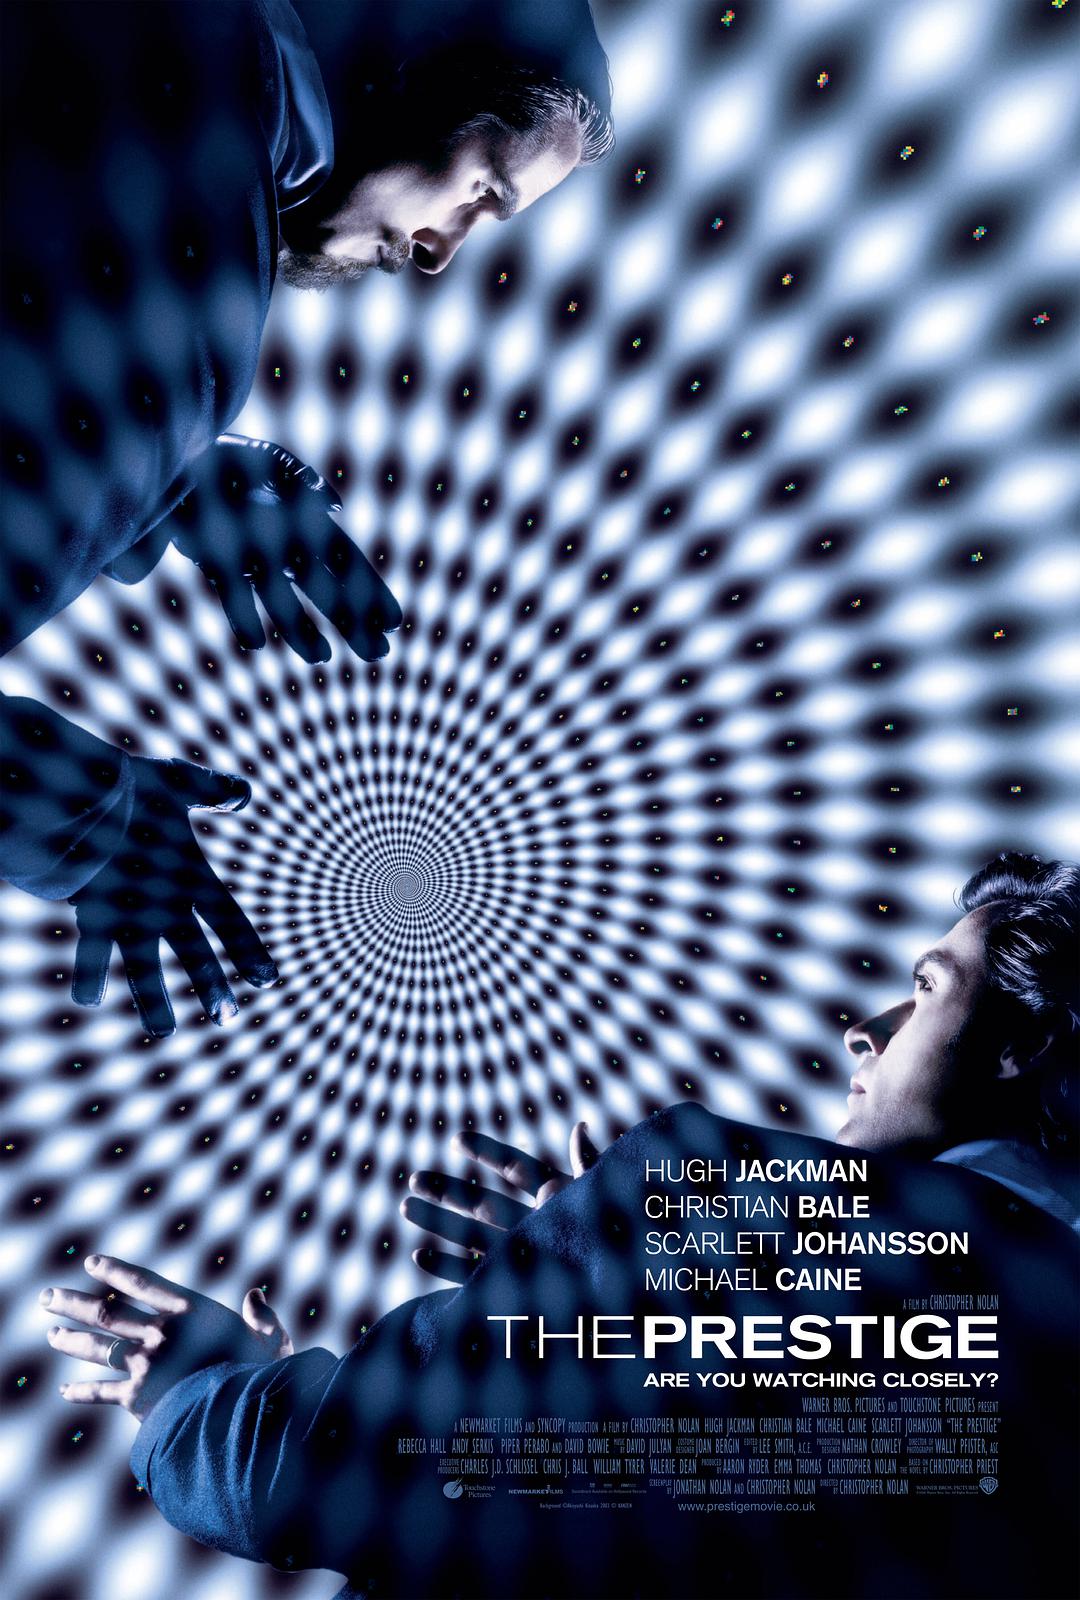 致命魔术 The.Prestige.2006.1080p.BluRay.REMUX.AVC.DTS-HD.MA.5.1-FGT 36.57GB